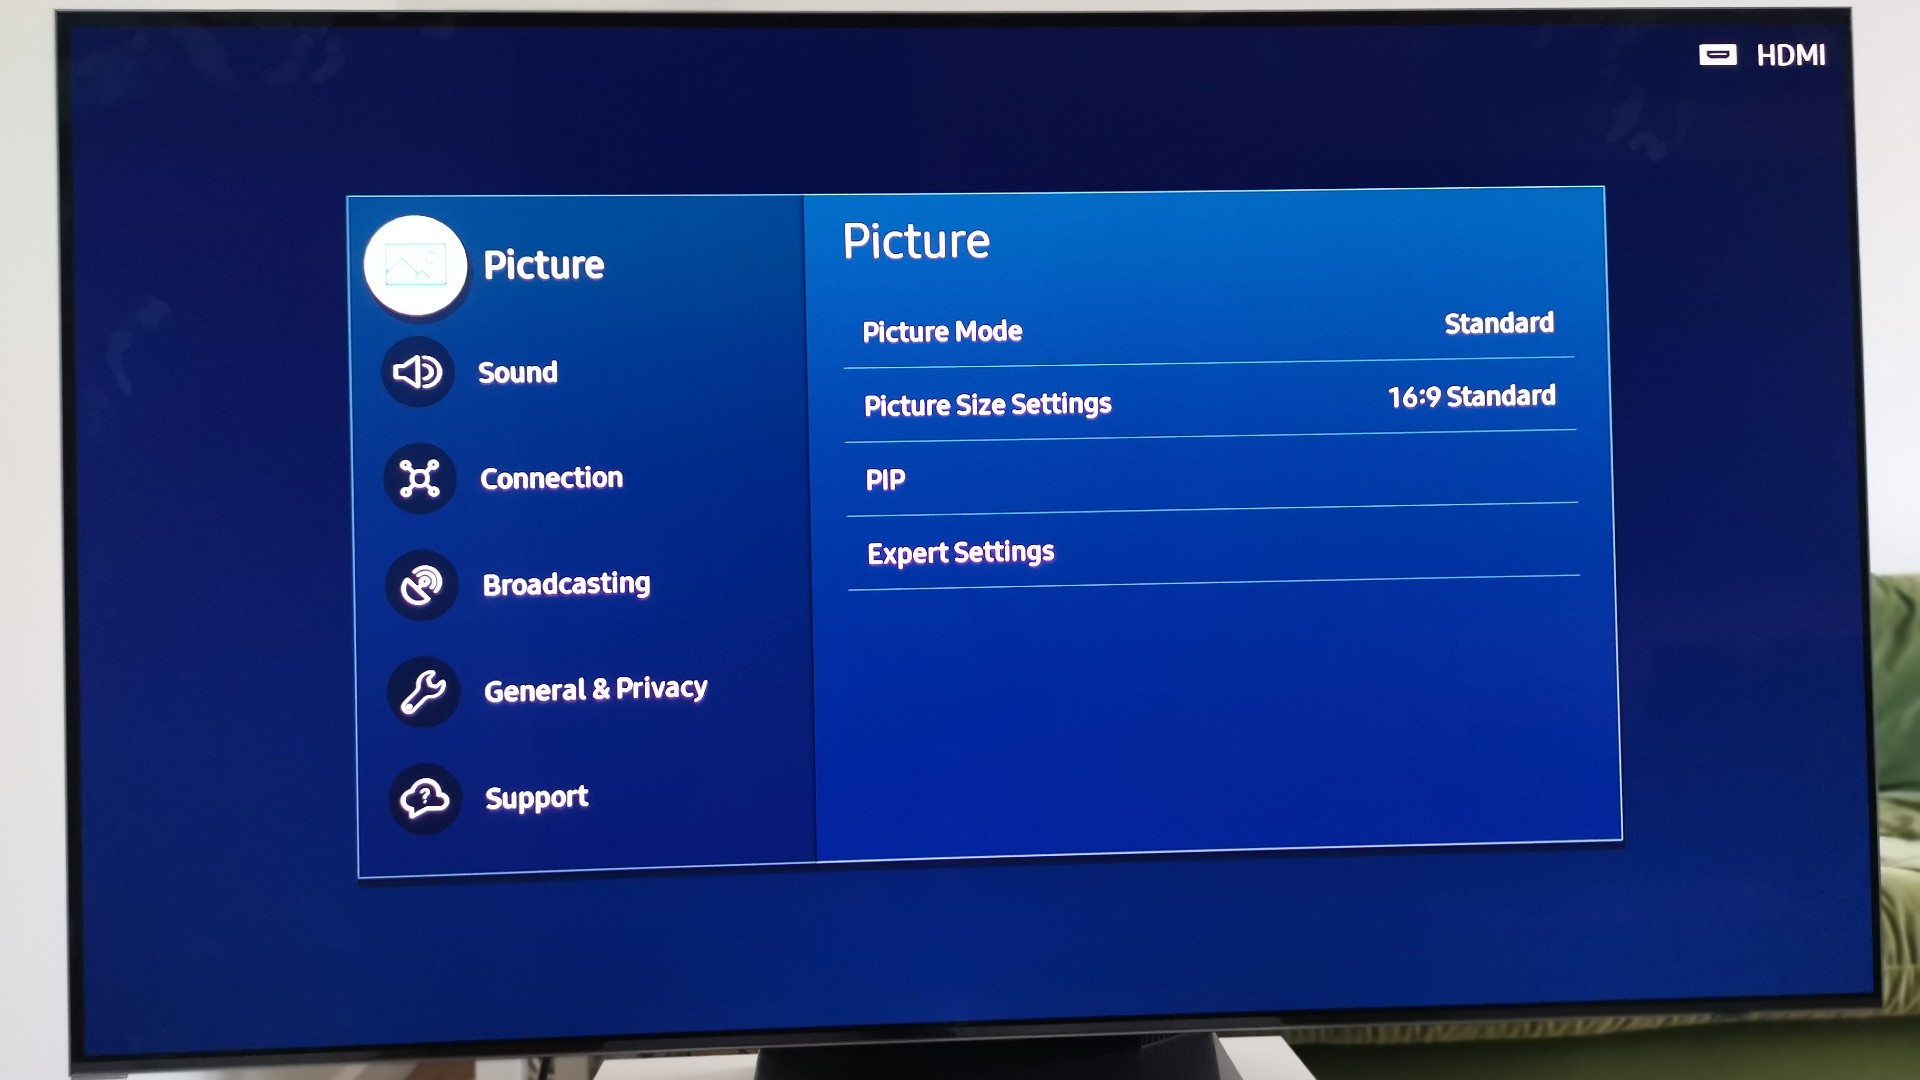 Configuración de imagen de Smart TV Samsung S95B 2022 4K OLED HDR